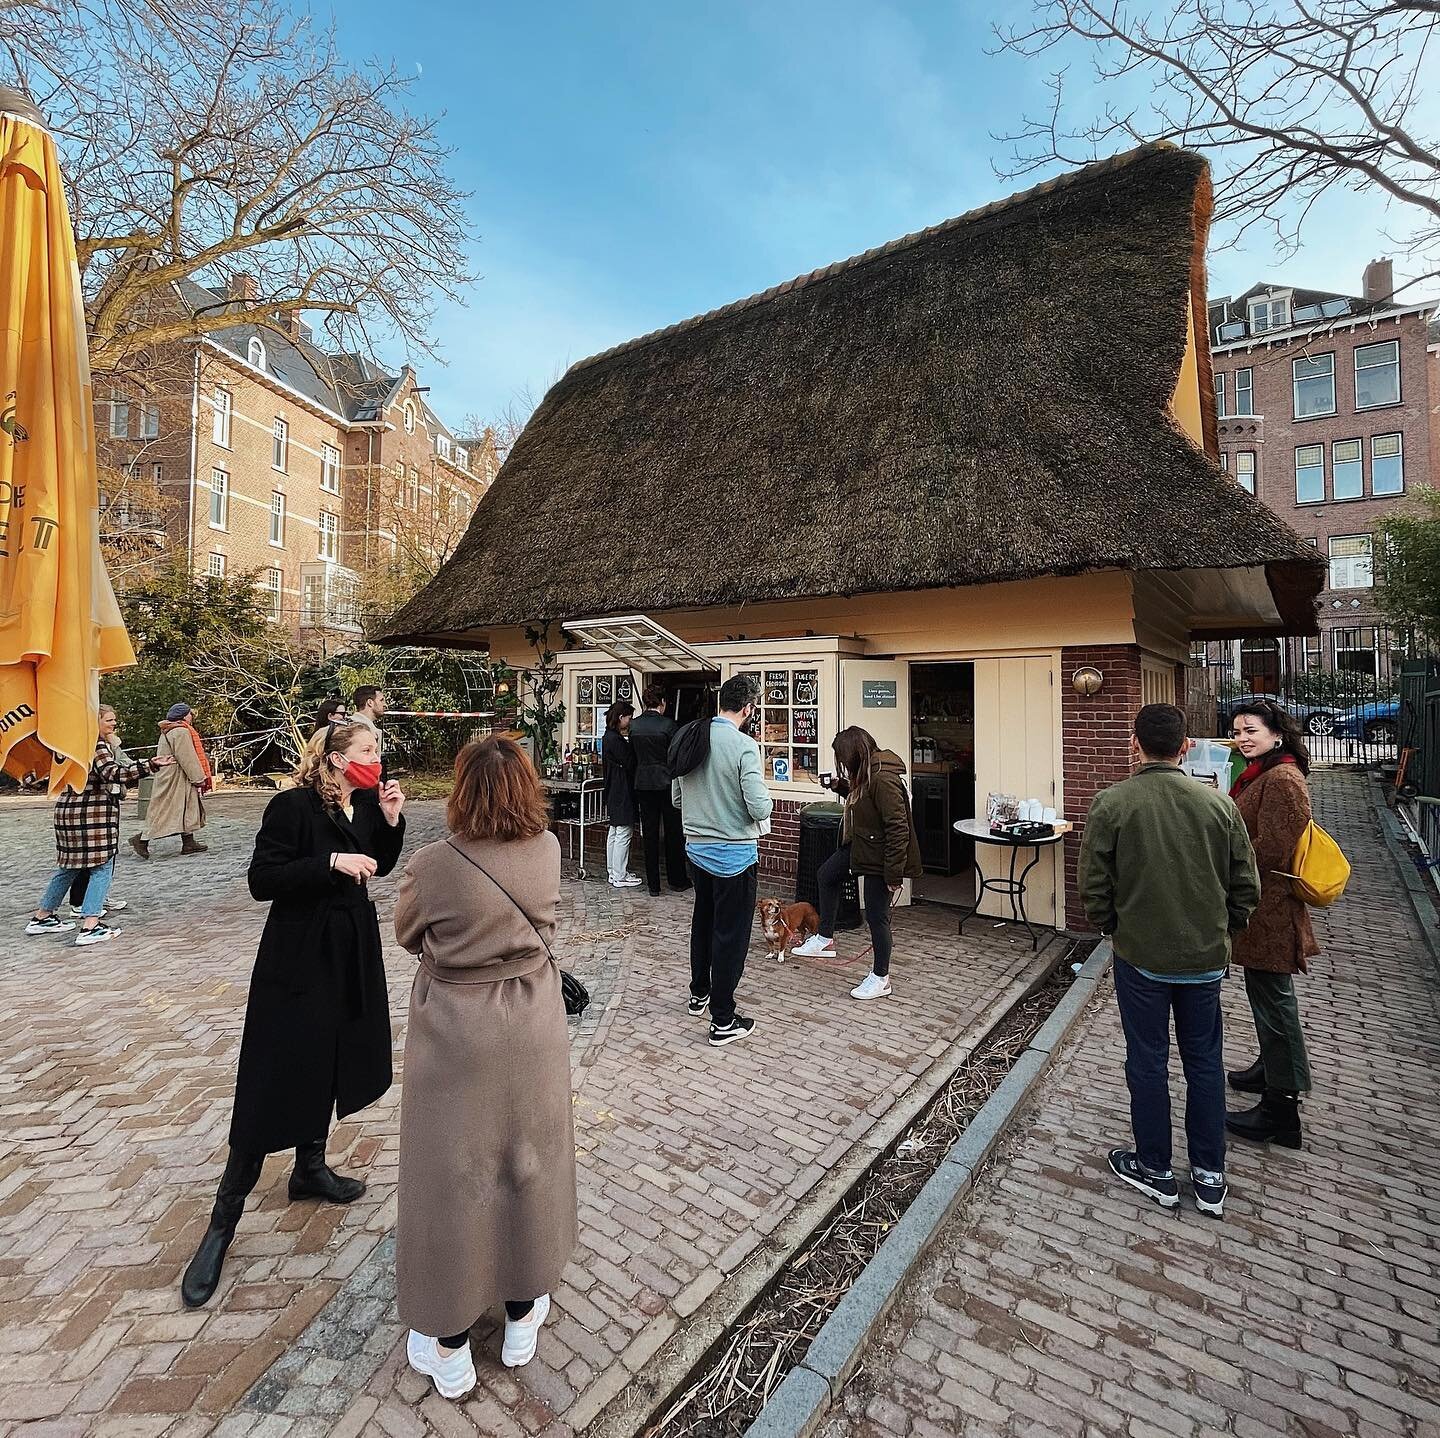 A sunny Saturday @vondeltuin on the edge of Amsterdam&rsquo;s Vondelpark☀️ 

__
#brunchesandcoffees #vondeltuin #thatchedcottage #hetsnoephuis #spring #saturday #weekend #coffee #keytakeaways #instacoffee #instaholland #architecture #archidaily #stra